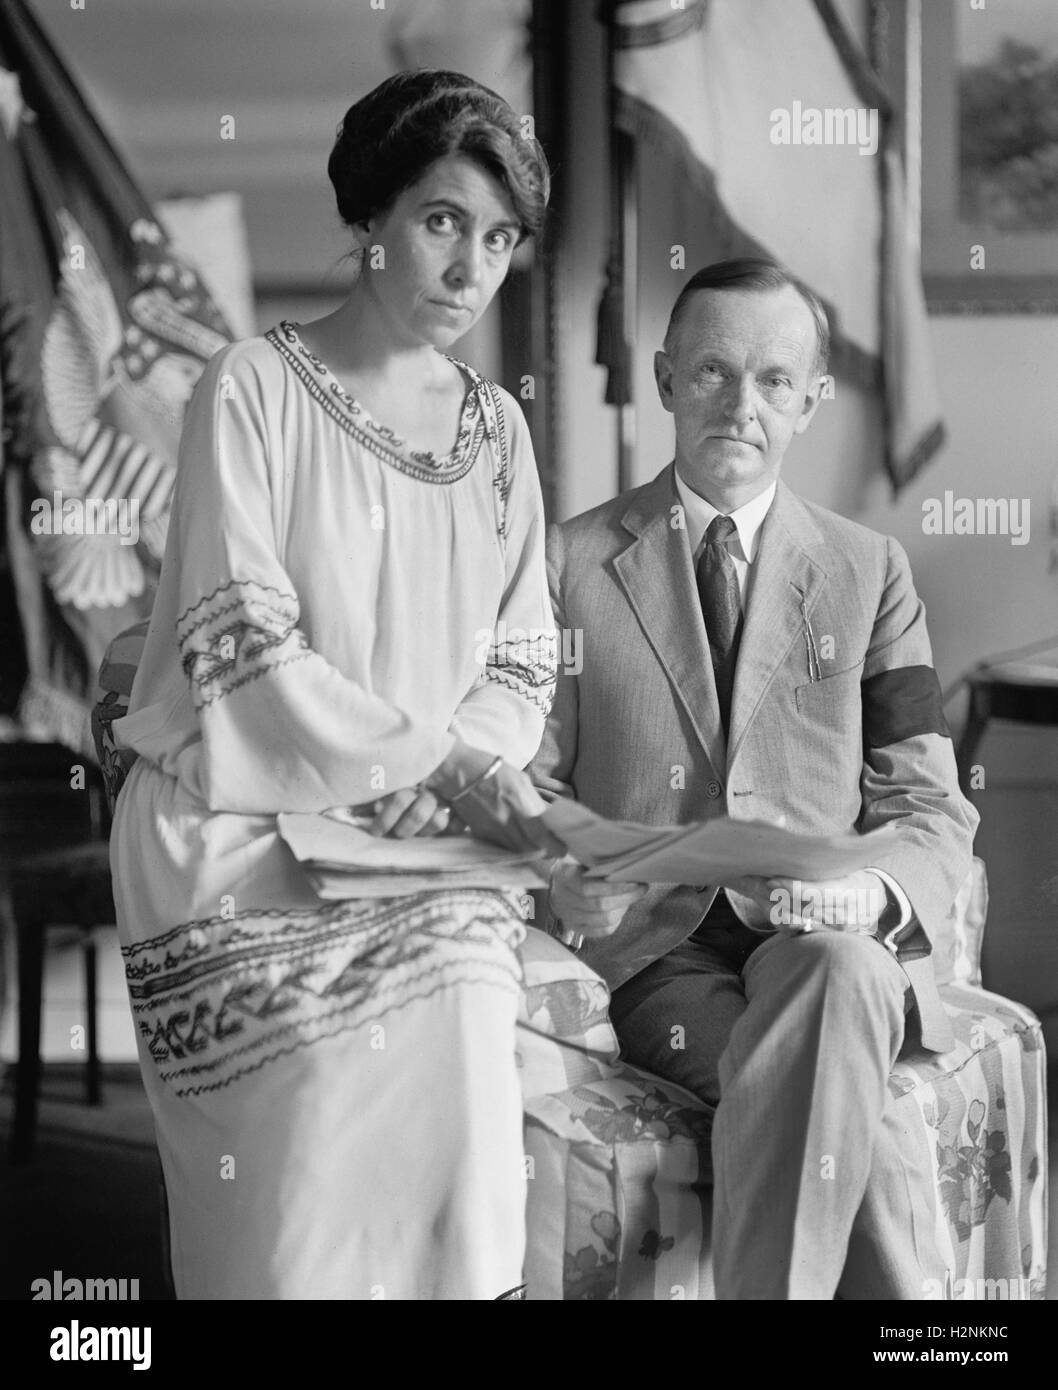 Nouveau président américain Calvin Coolidge et la Première Dame Grace Coolidge après la mort du Président Warren G. Harding, Washington DC, USA, National Photo Company, le 5 août 1923 Banque D'Images